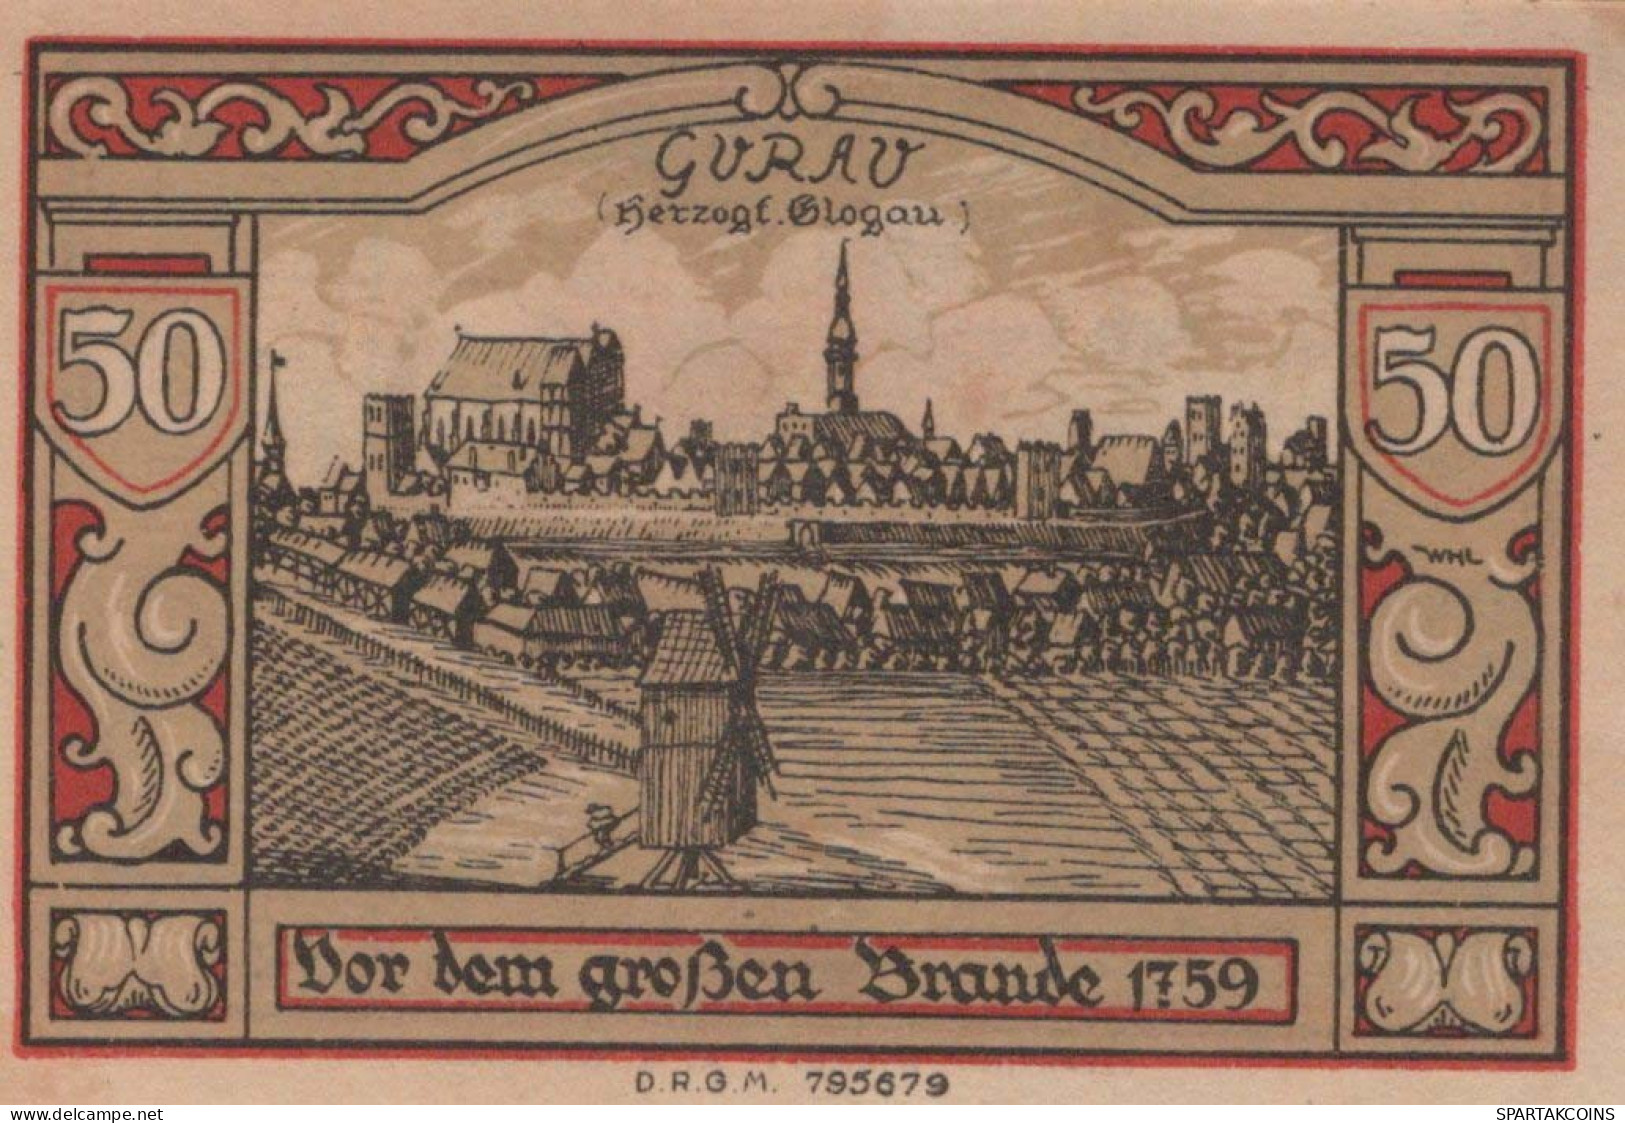 50 PFENNIG 1922 Stadt GUHRAU Niedrigeren Silesia UNC DEUTSCHLAND Notgeld #PD091 - Lokale Ausgaben